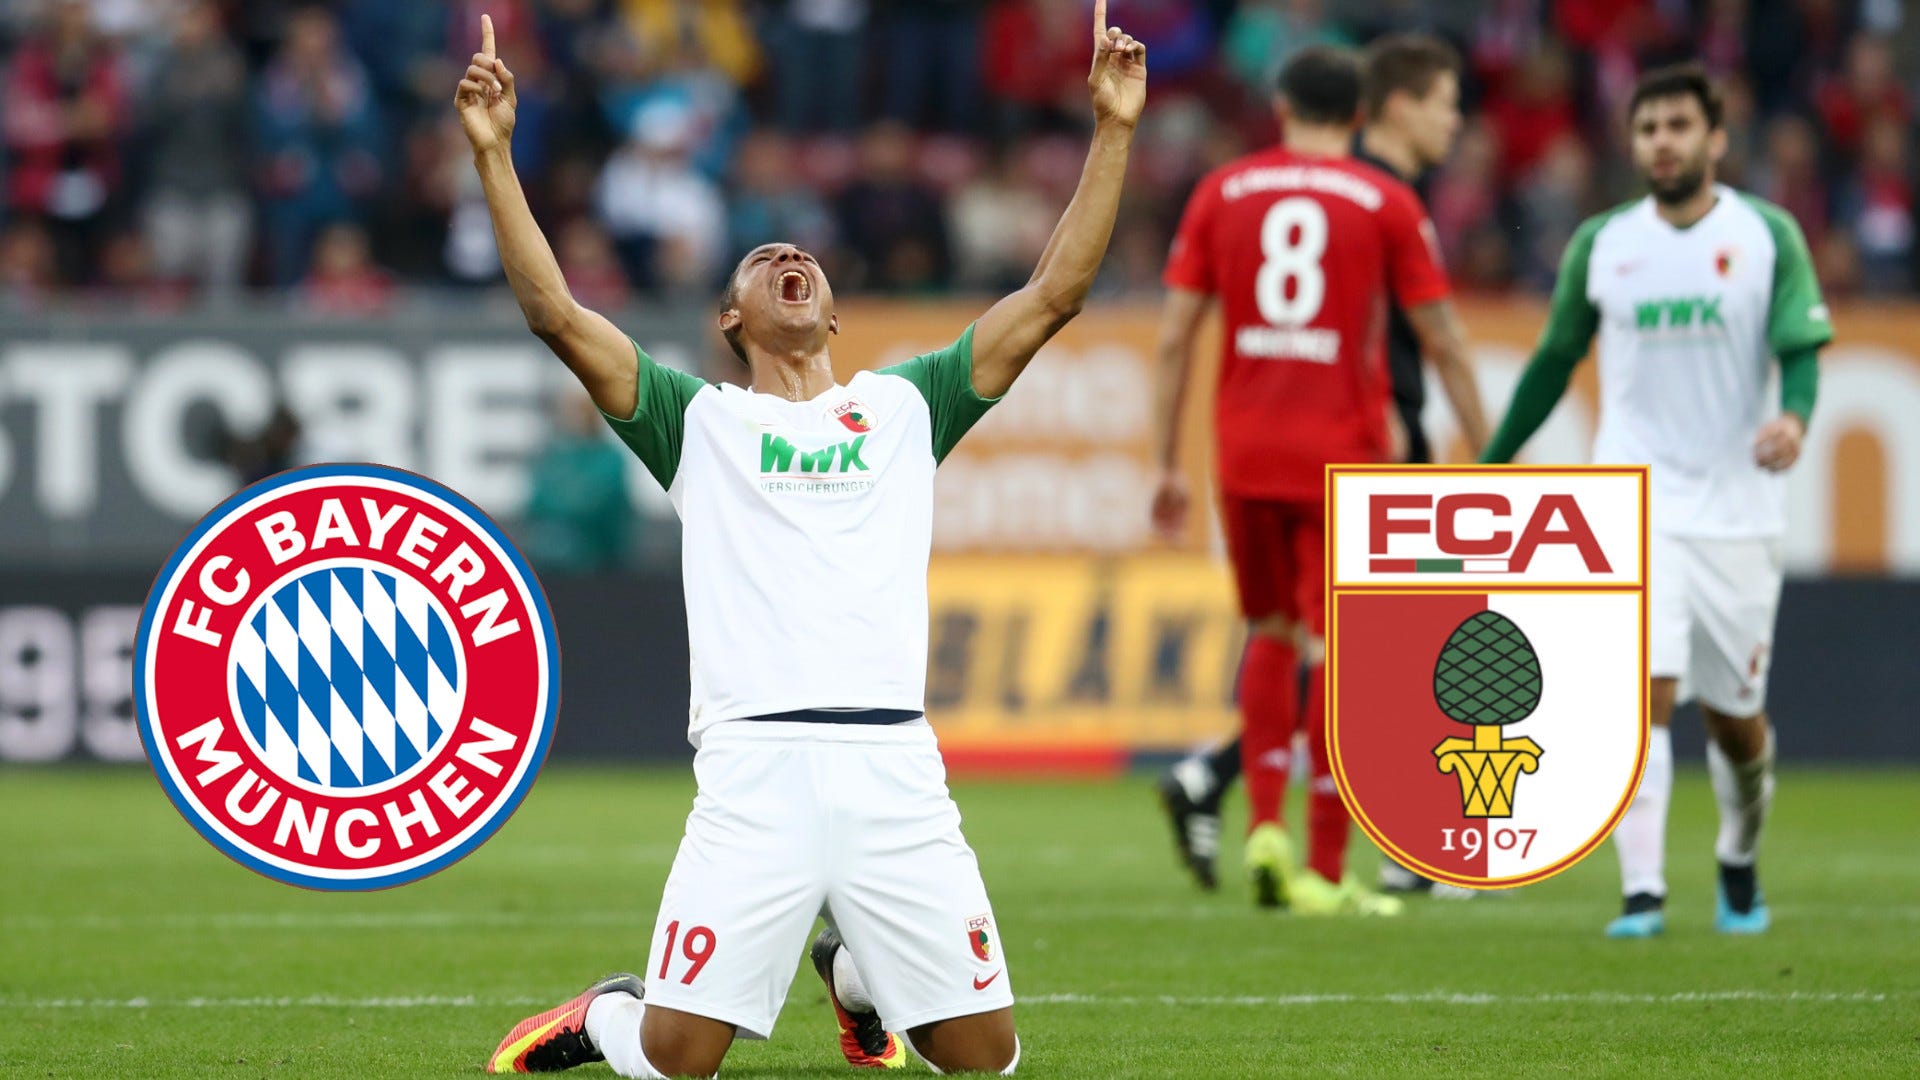 FC Bayern München - FC Augsburg TV, LIVE-STREAM, Aufstellung, Highlights